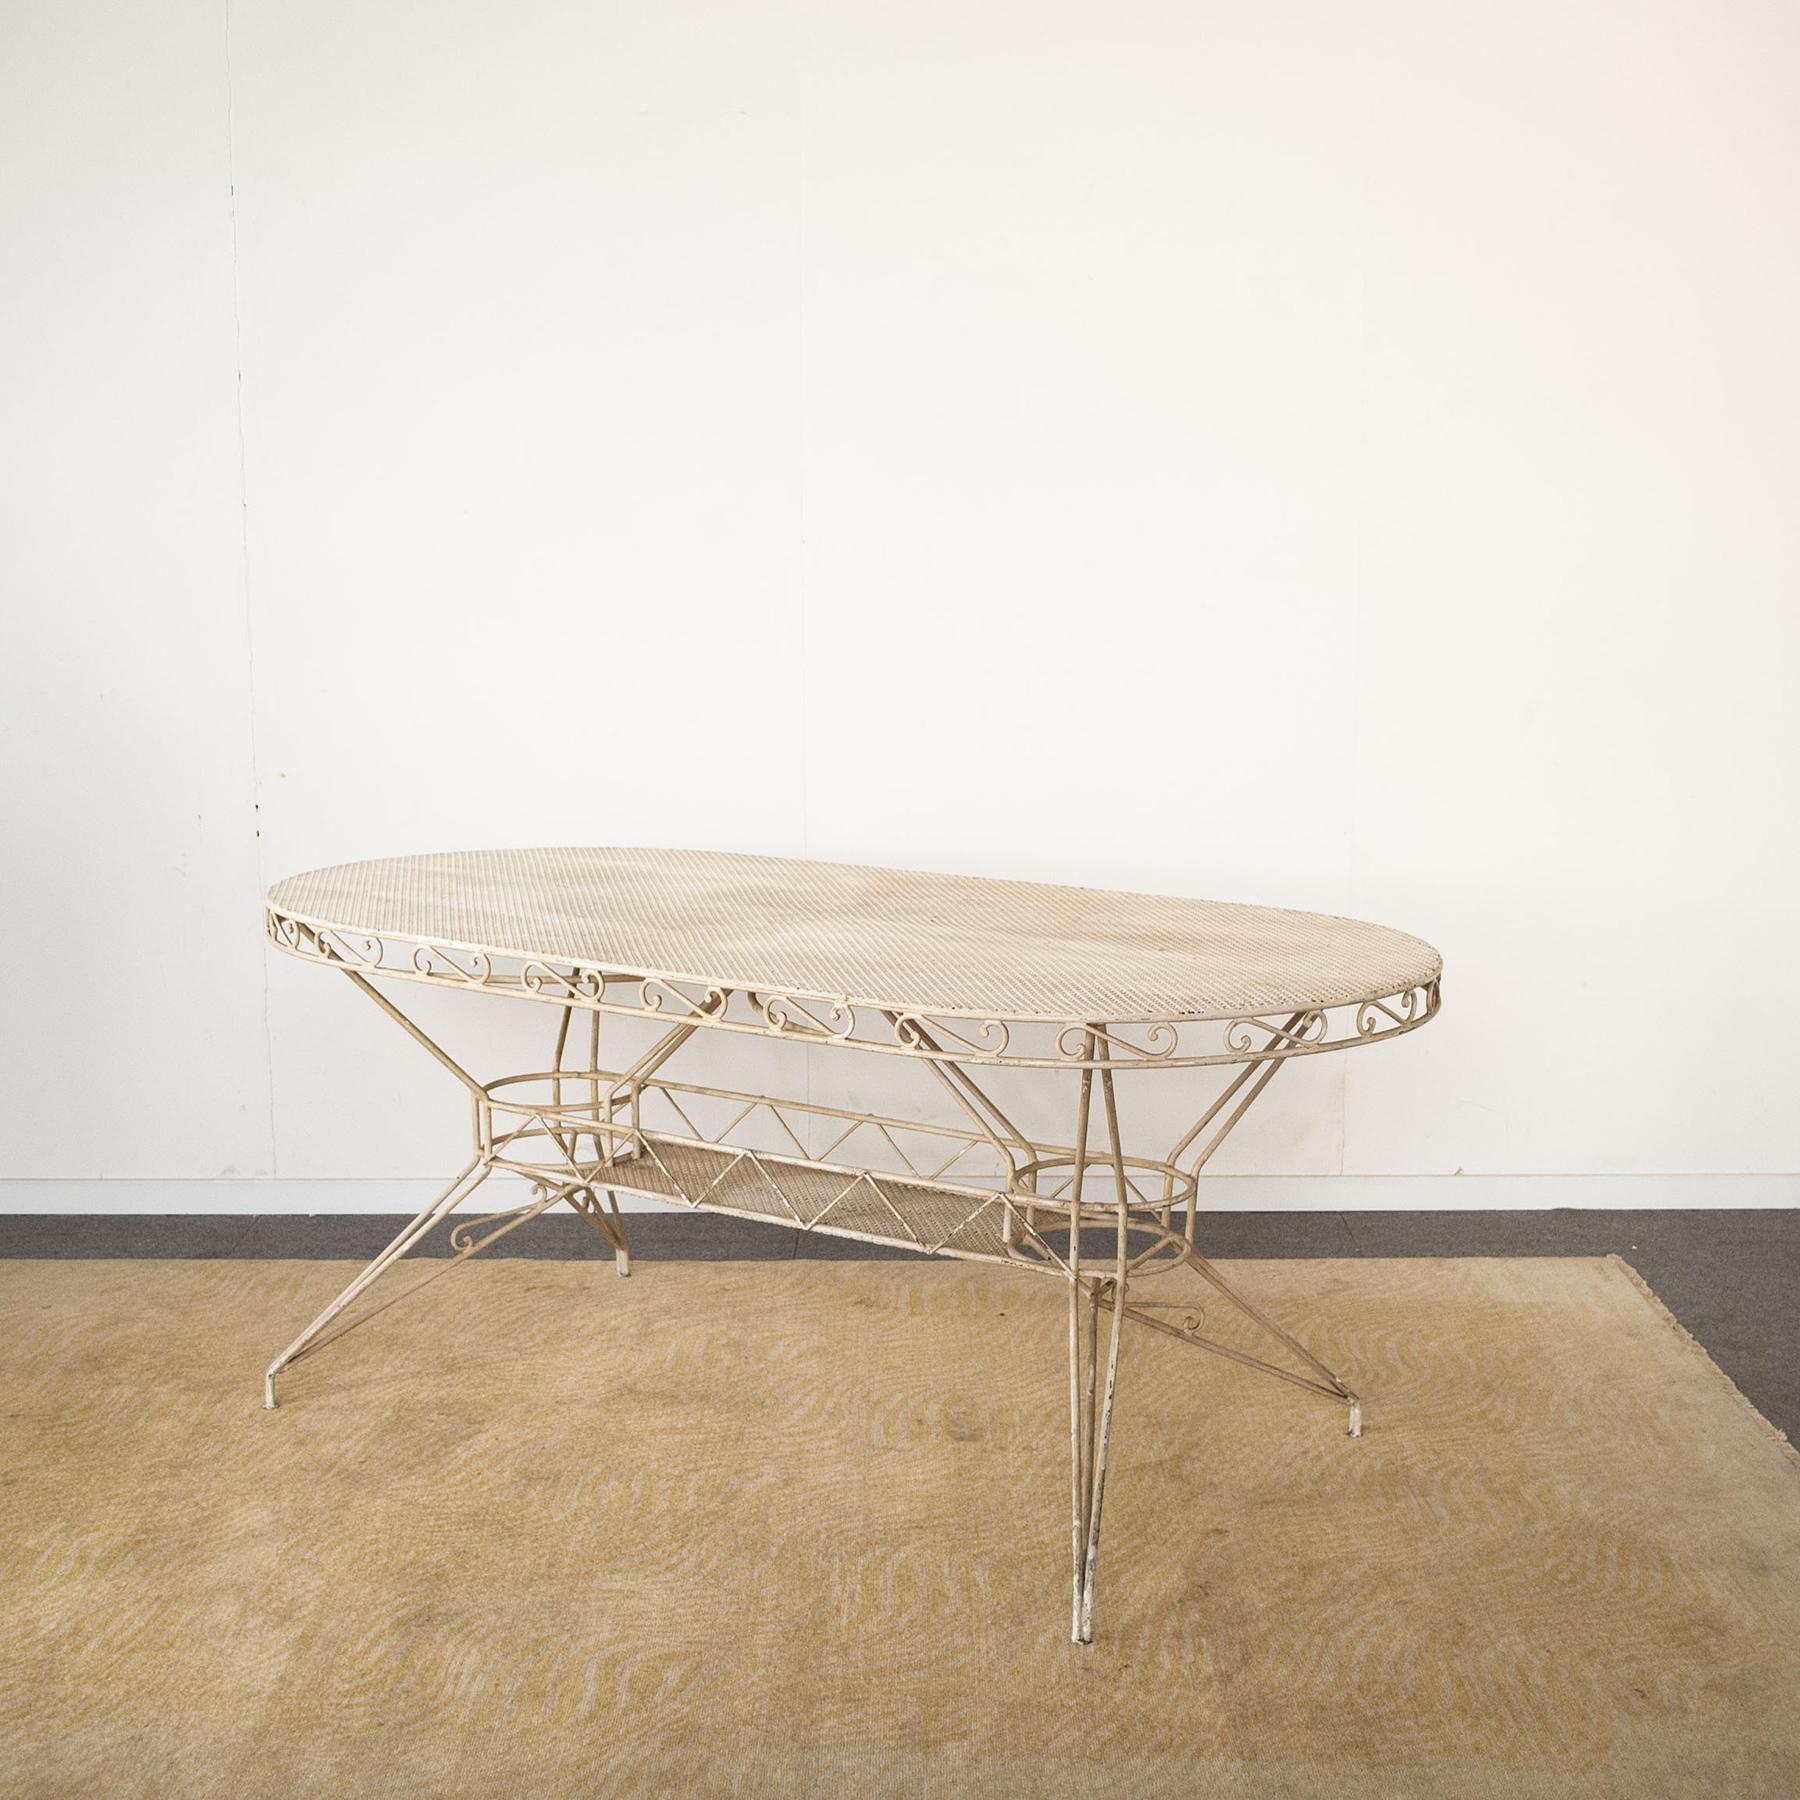 Italian Wrought Iron Table from the 1950s Casa E Giardino Gio Ponti Style